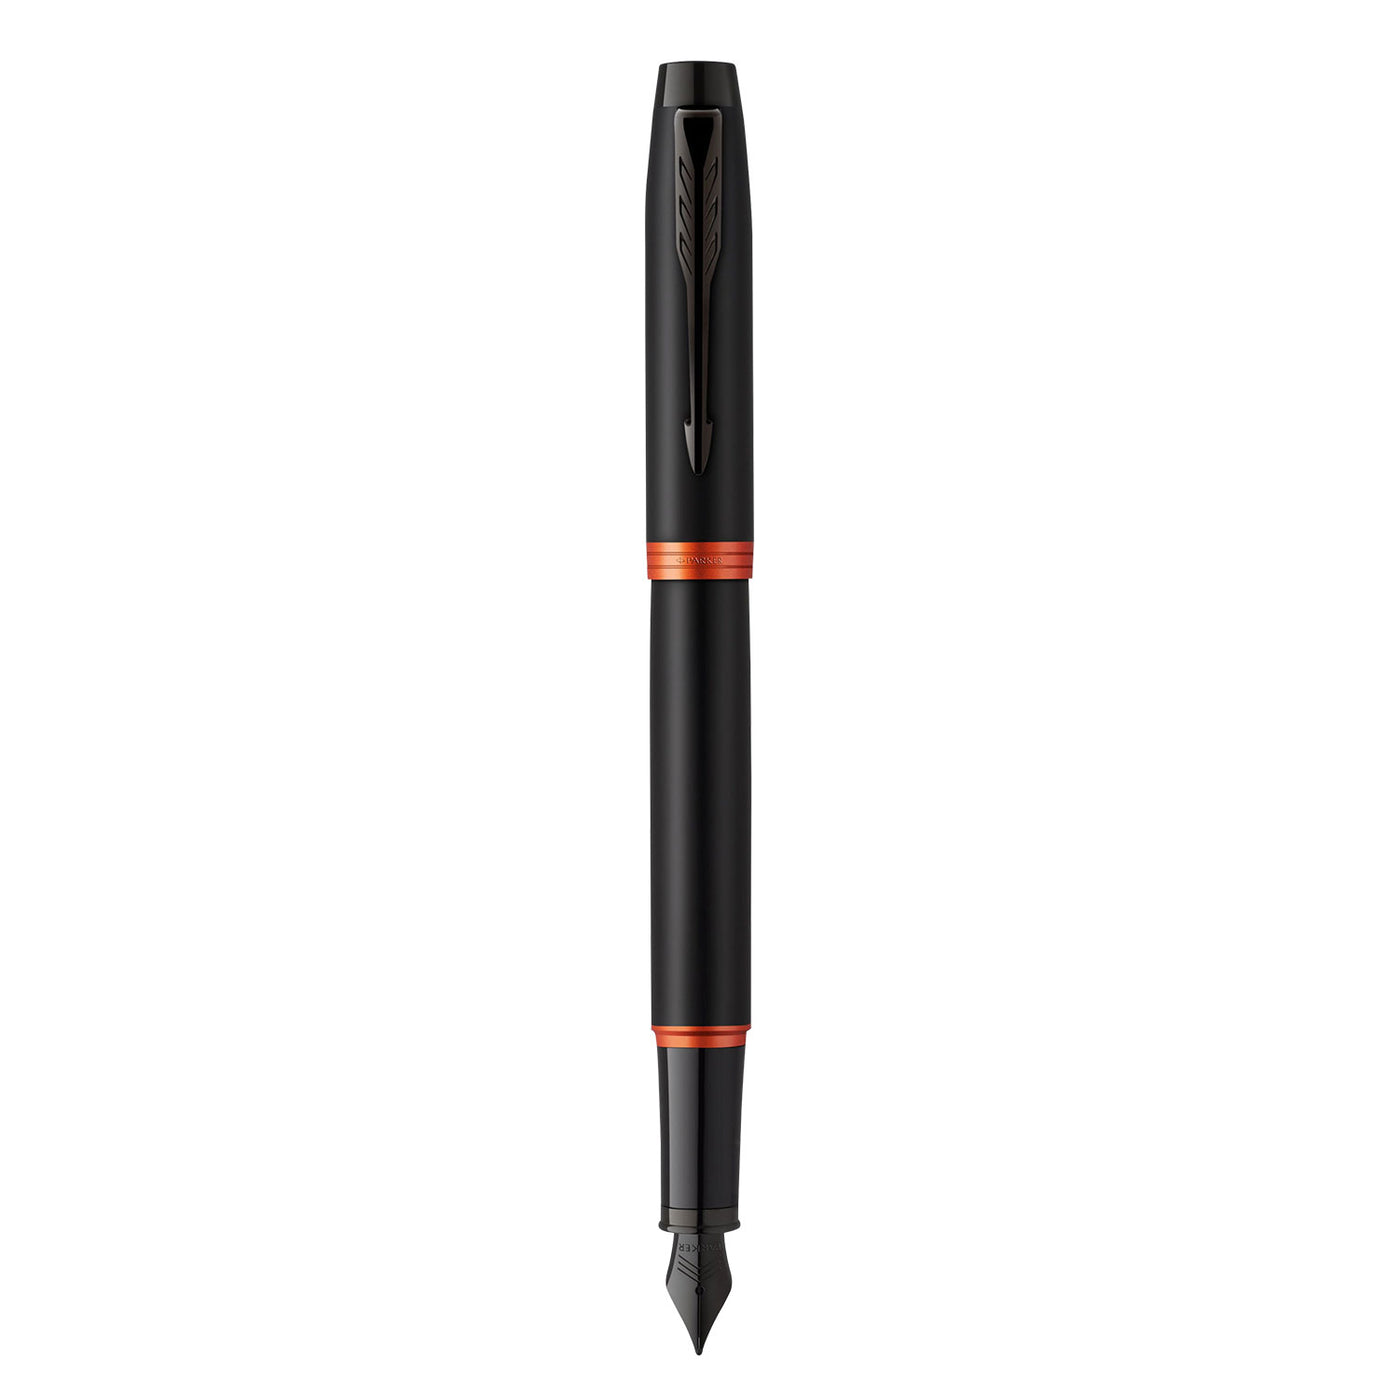 Parker IM Vibrant Rings Fountain Pen - Flame Orange Black BT 3